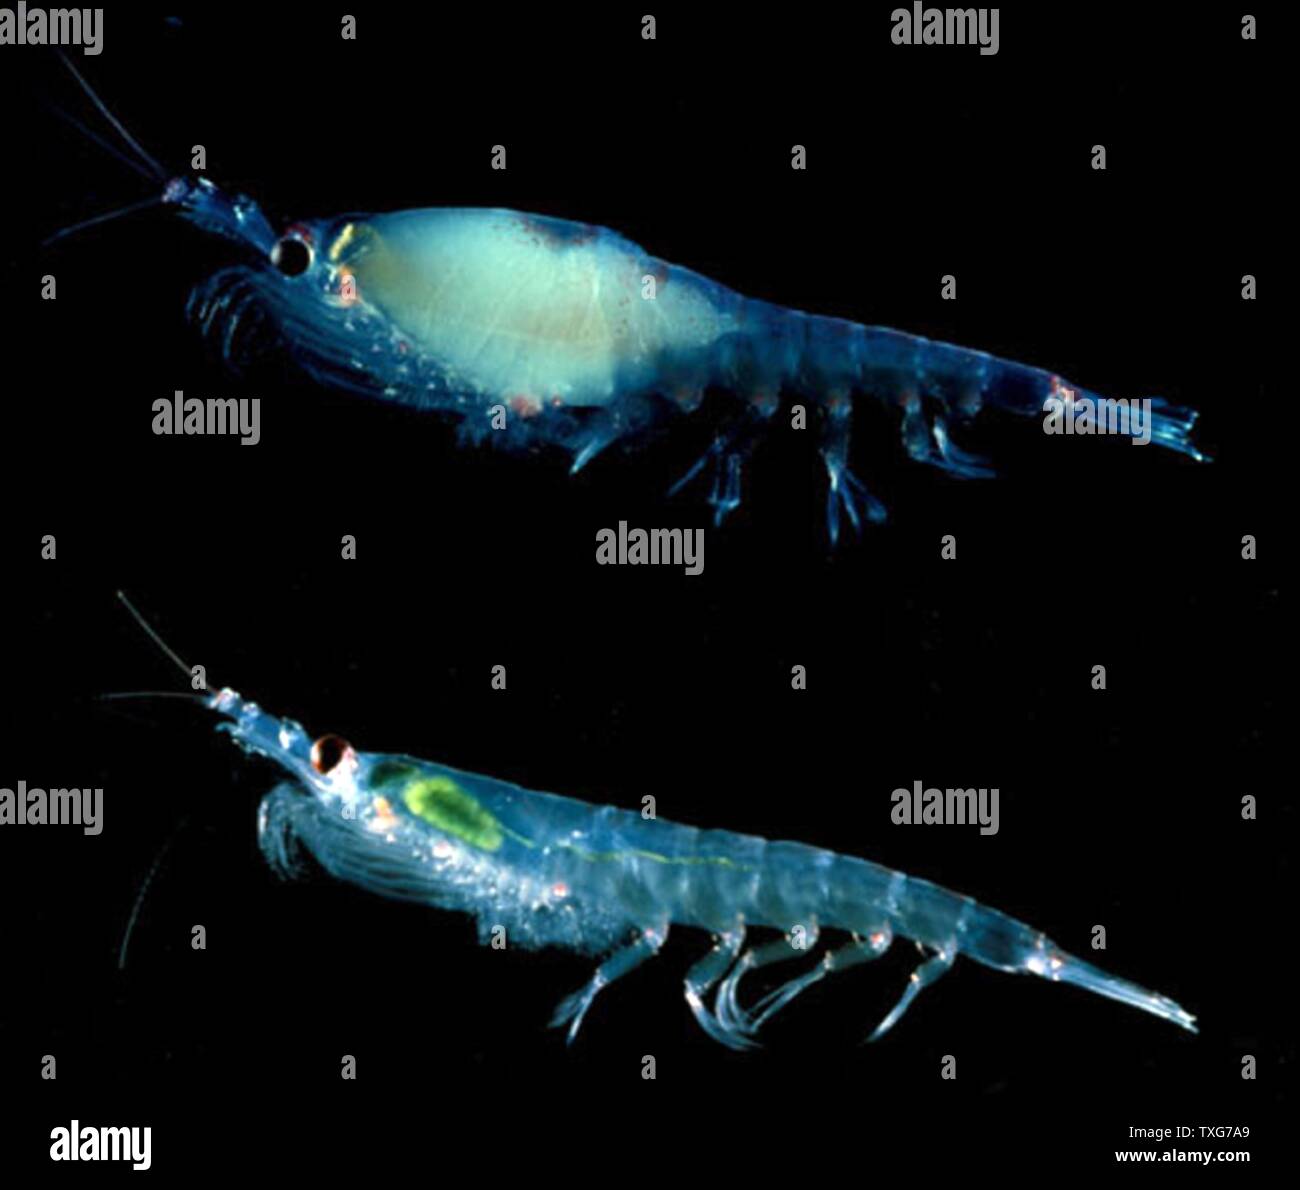 Krill, piccoli crostacei dello zooplancton che si nutrono di fitoplancton e  che formano la dieta di specie in alto la catena alimentare come pesce,  balene, pinguini, guarnizioni e calamari. Pescano anche commercialmente